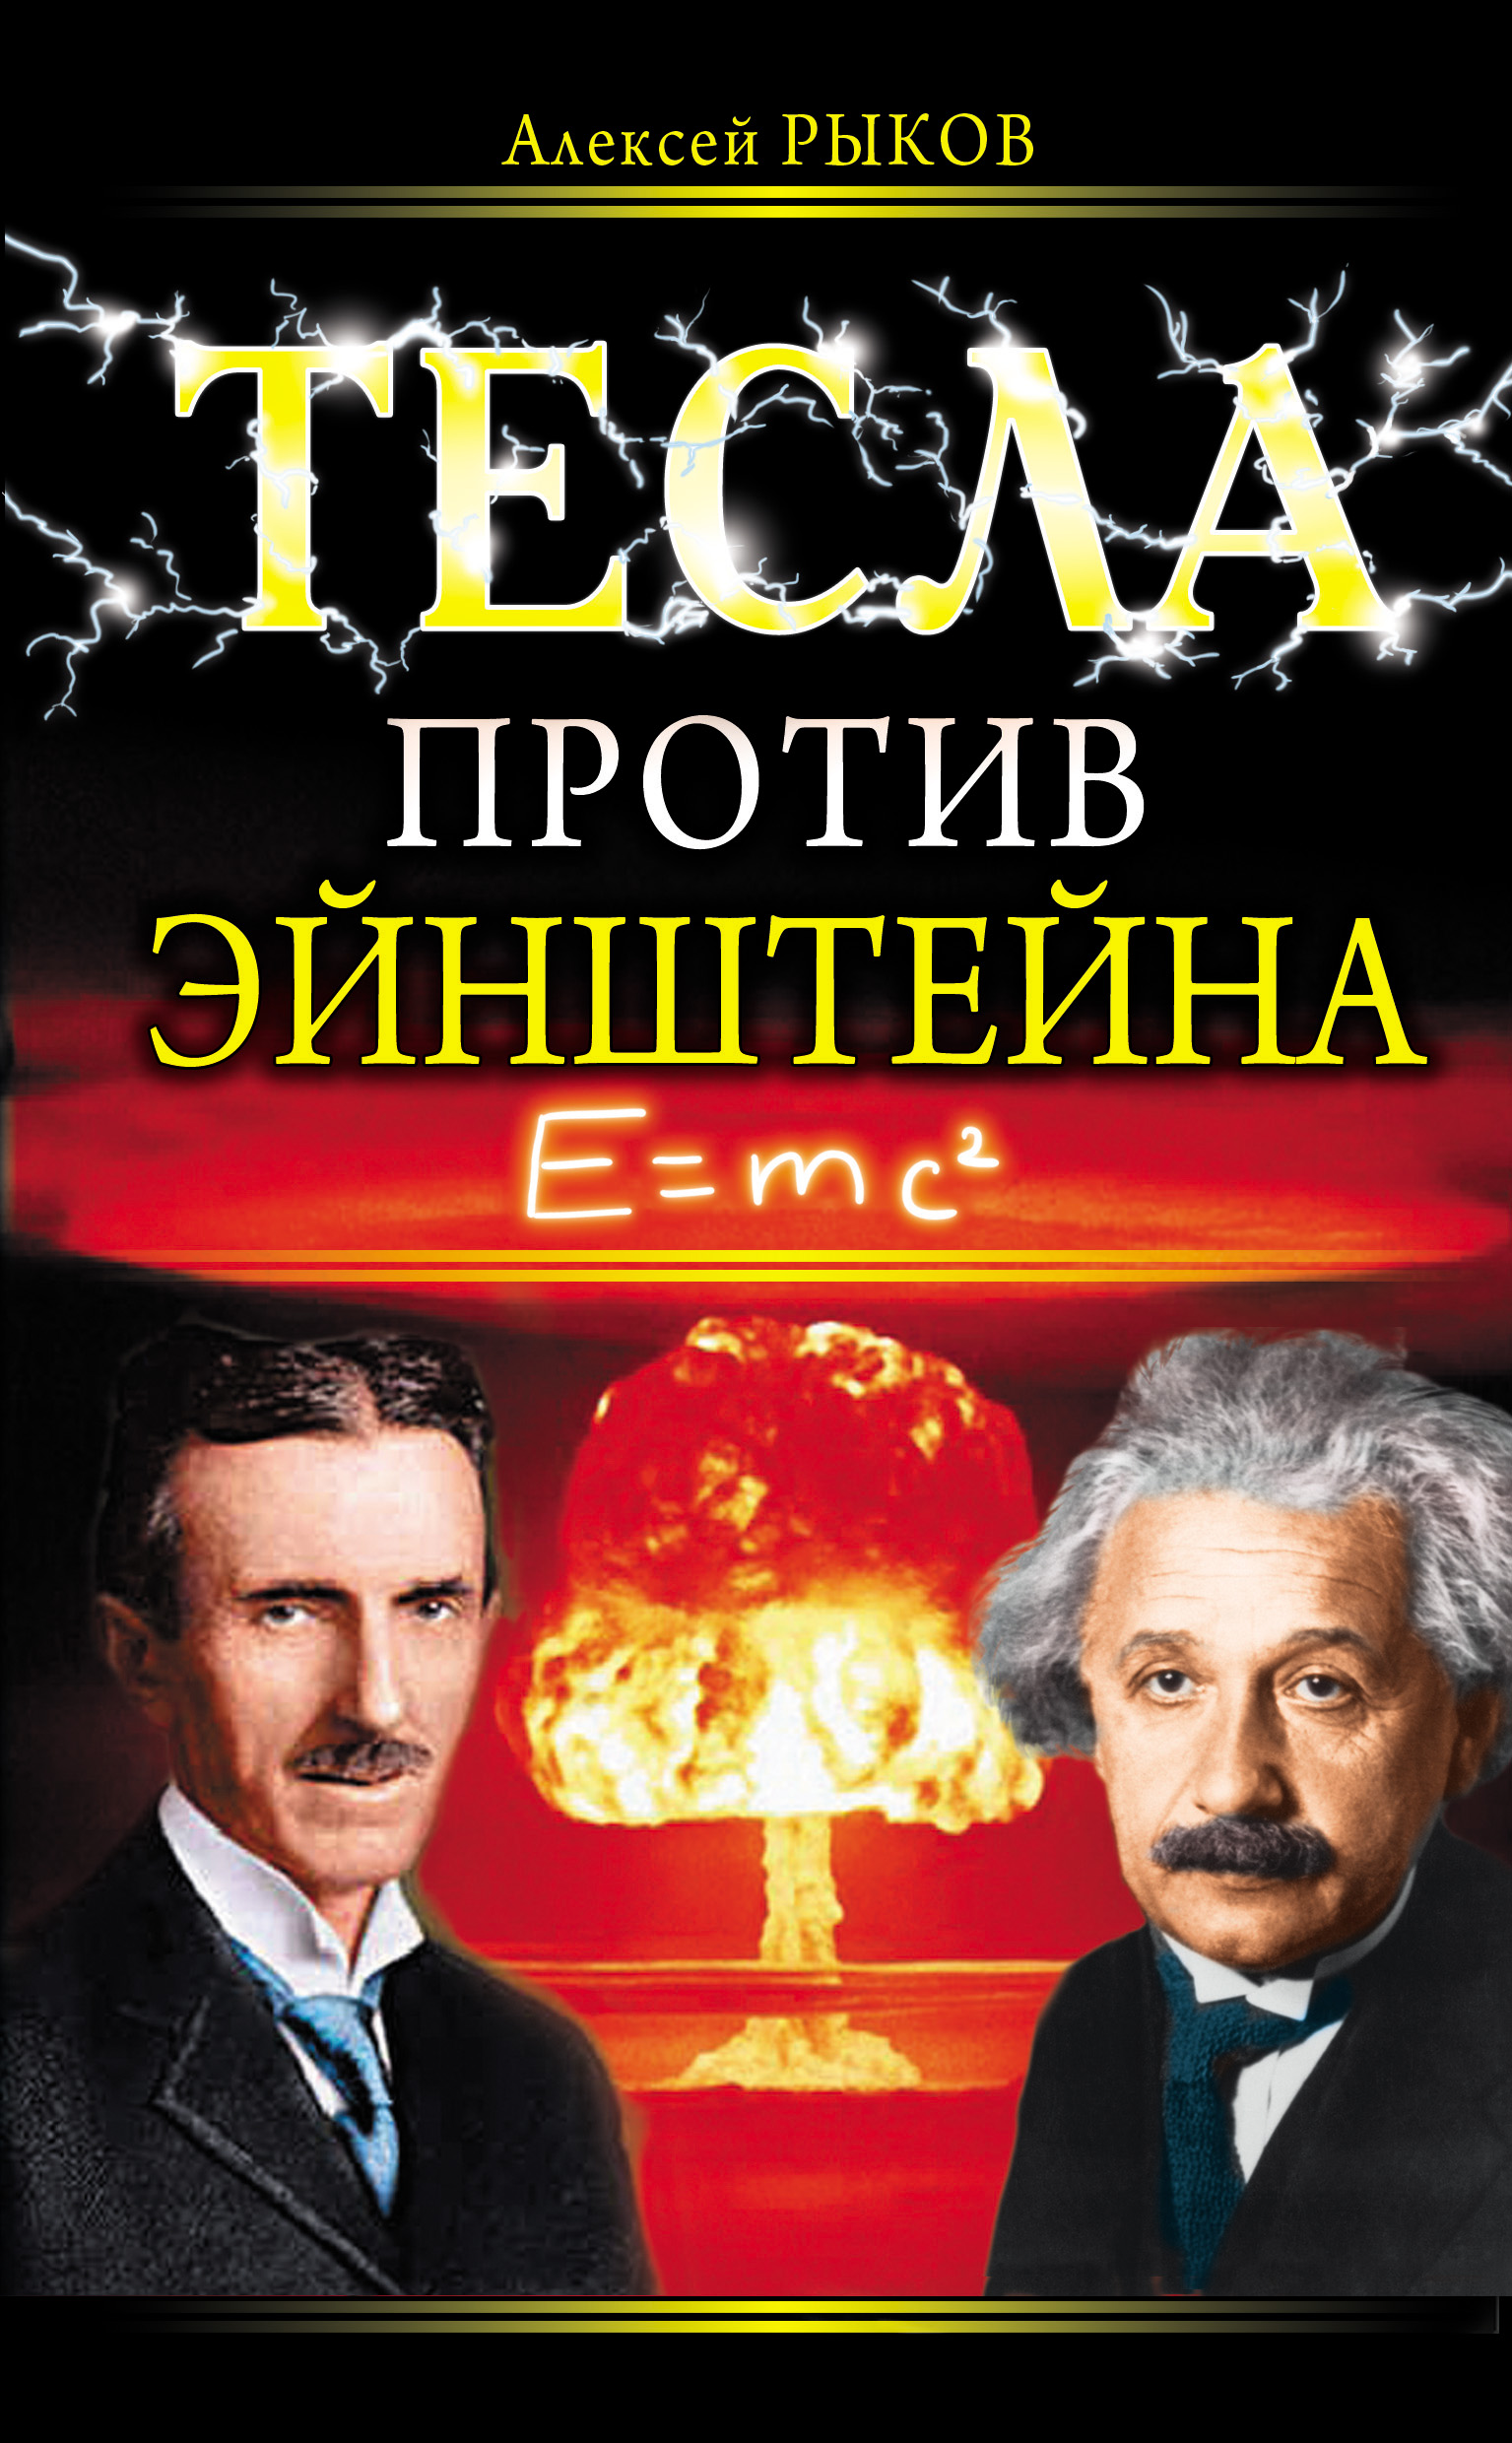 Книга Тесла против Эйнштейна из серии , созданная Алексей Рыков, может относится к жанру Публицистика: прочее, Биографии и Мемуары. Стоимость электронной книги Тесла против Эйнштейна с идентификатором 4938681 составляет 69.90 руб.